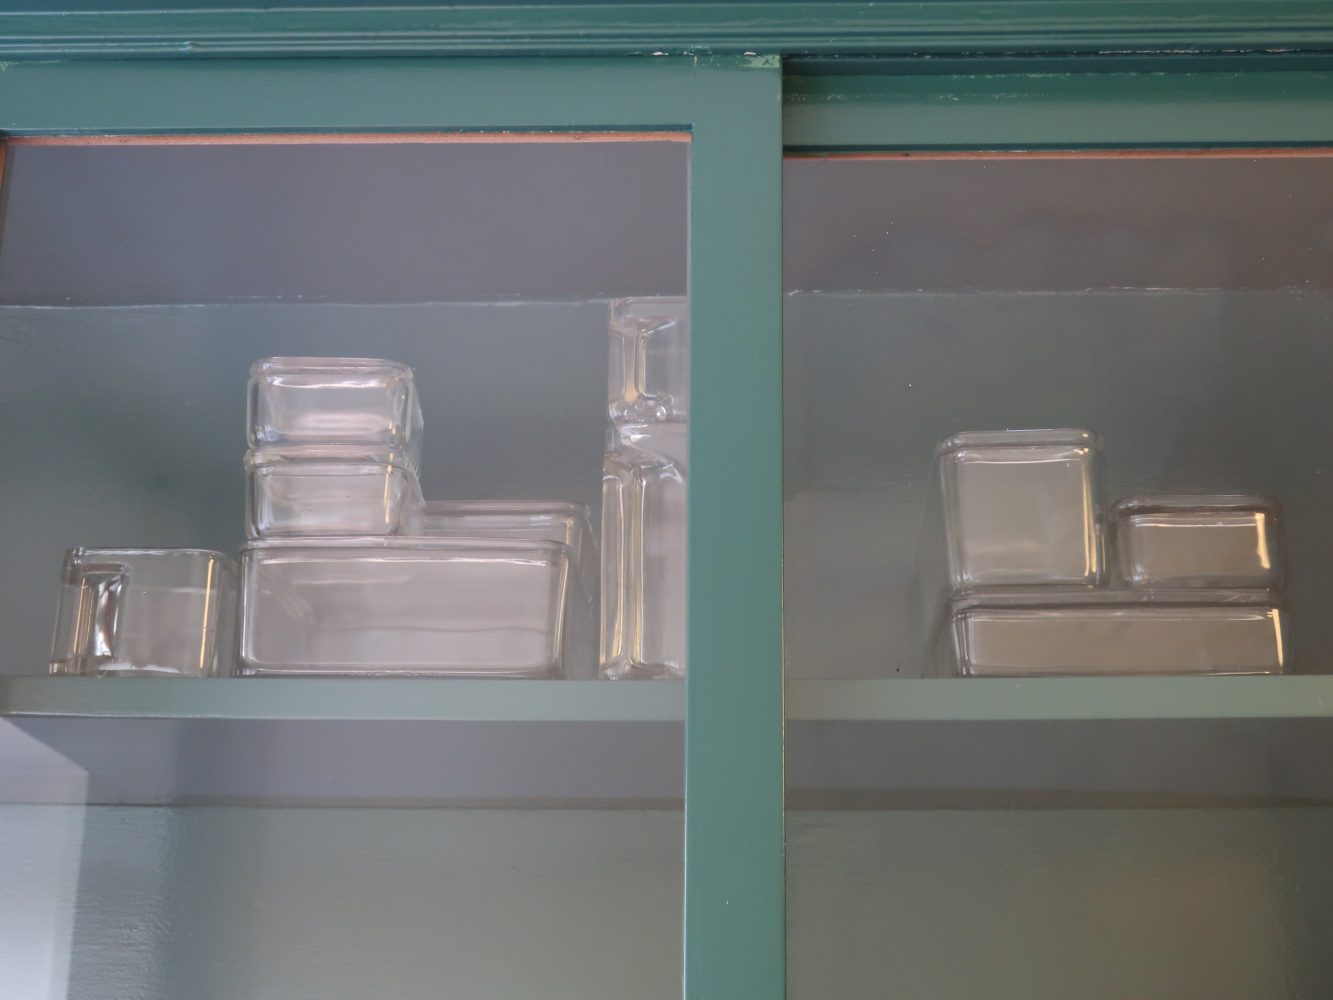 Imagen 4 Diseño de contenedores de vidrio creados por Wilhelm Wagenfeld. Casa museo Ernst May, Frankfurt. Fotografía Rodrigo Vera M. 